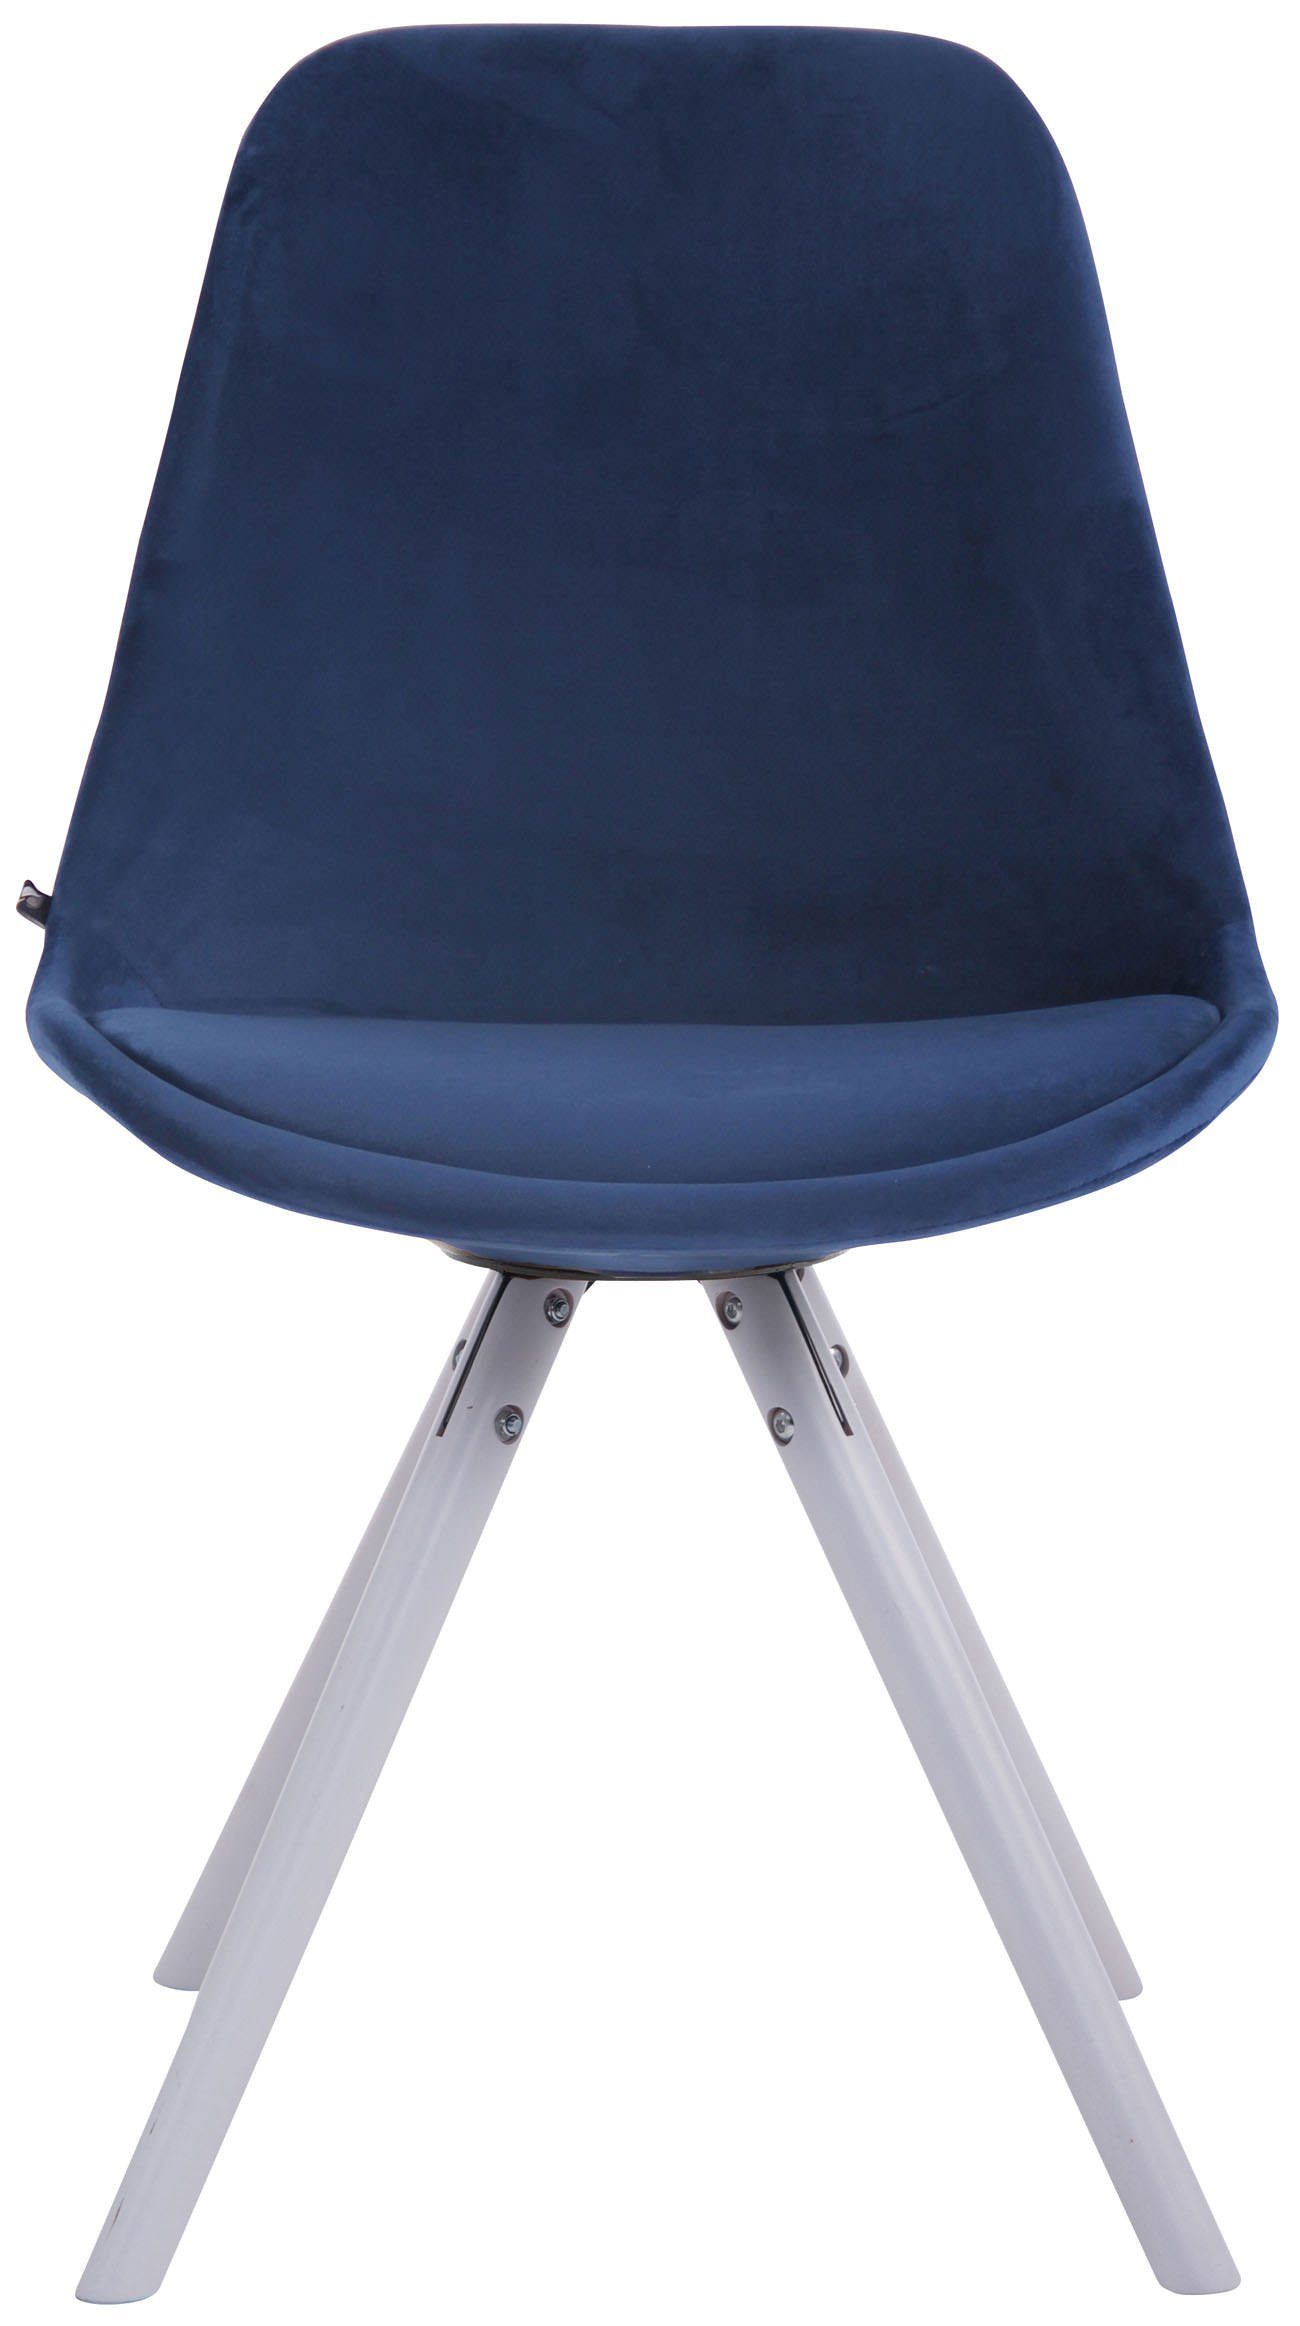 Sitzfläche - TPFLiving Samt Besucherstuhl Toulon weiß Buchenholz Konferenzstuhl rund (Küchenstuhl hochwertig Sitzfläche: - Esszimmerstuhl Gestell: mit - - Wohnzimmerstuhl), blau gepolsterter